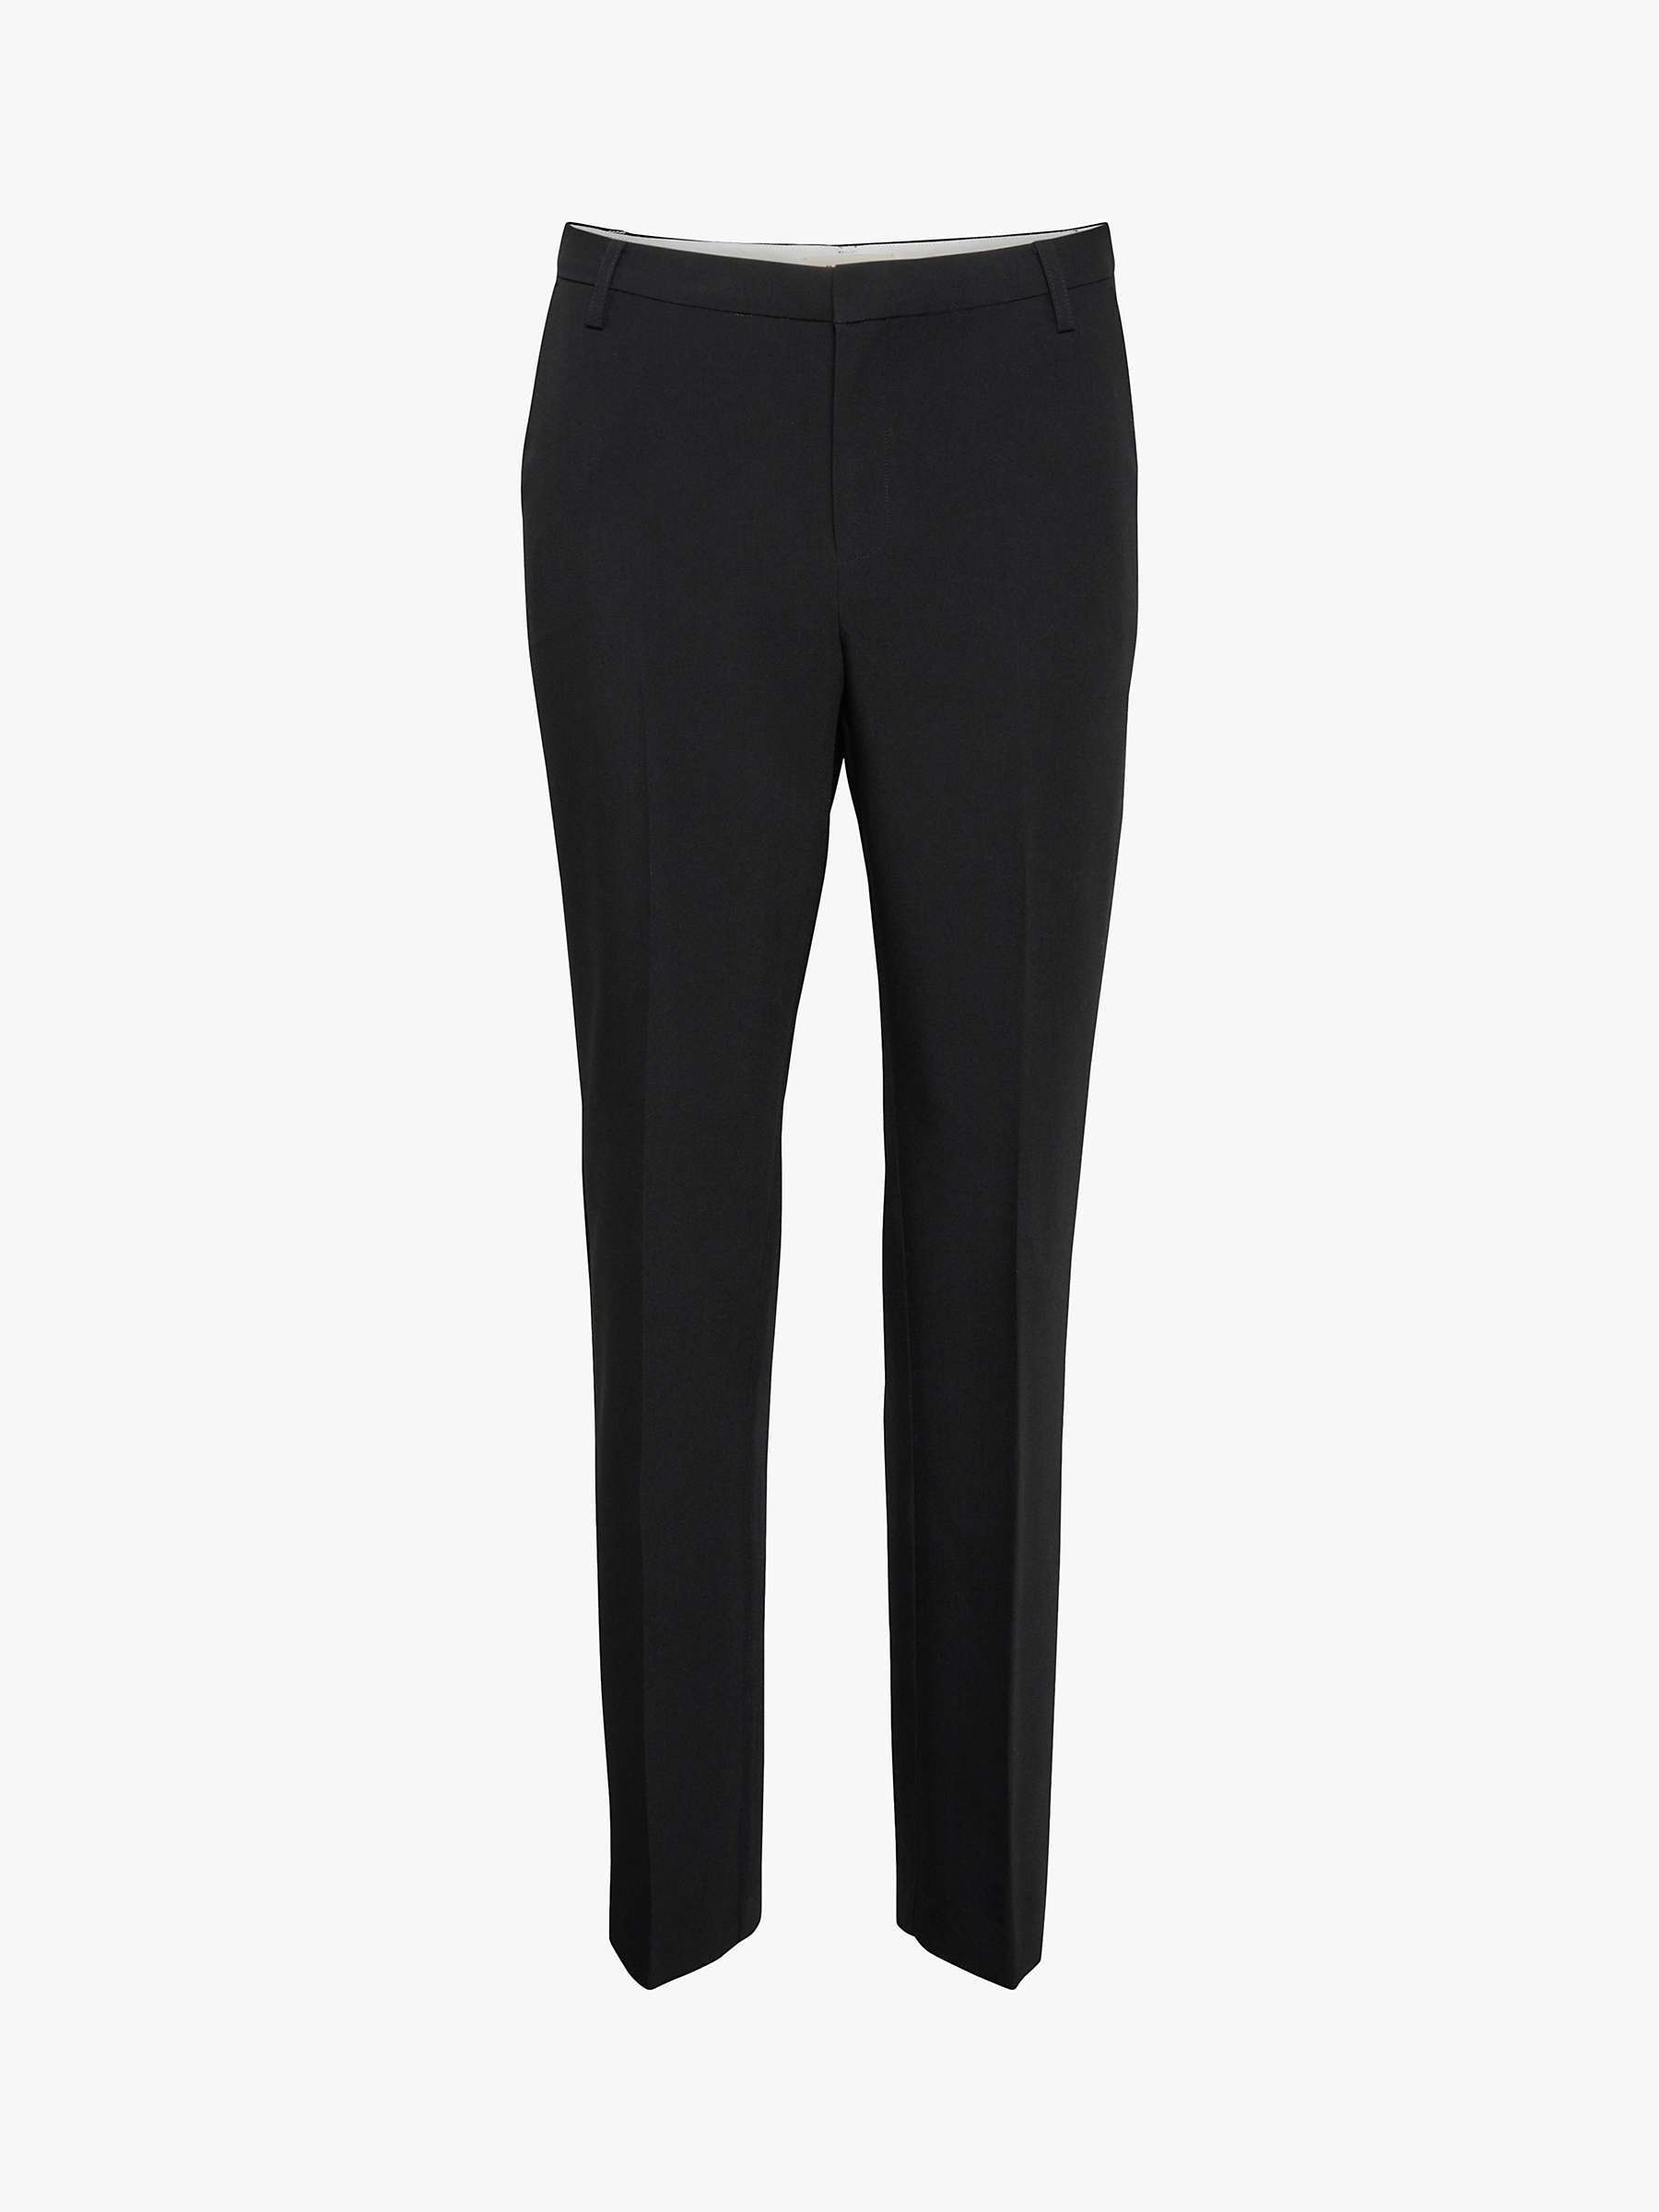 Buy Part Two Birdie Slim Fit Trousers, Black Online at johnlewis.com